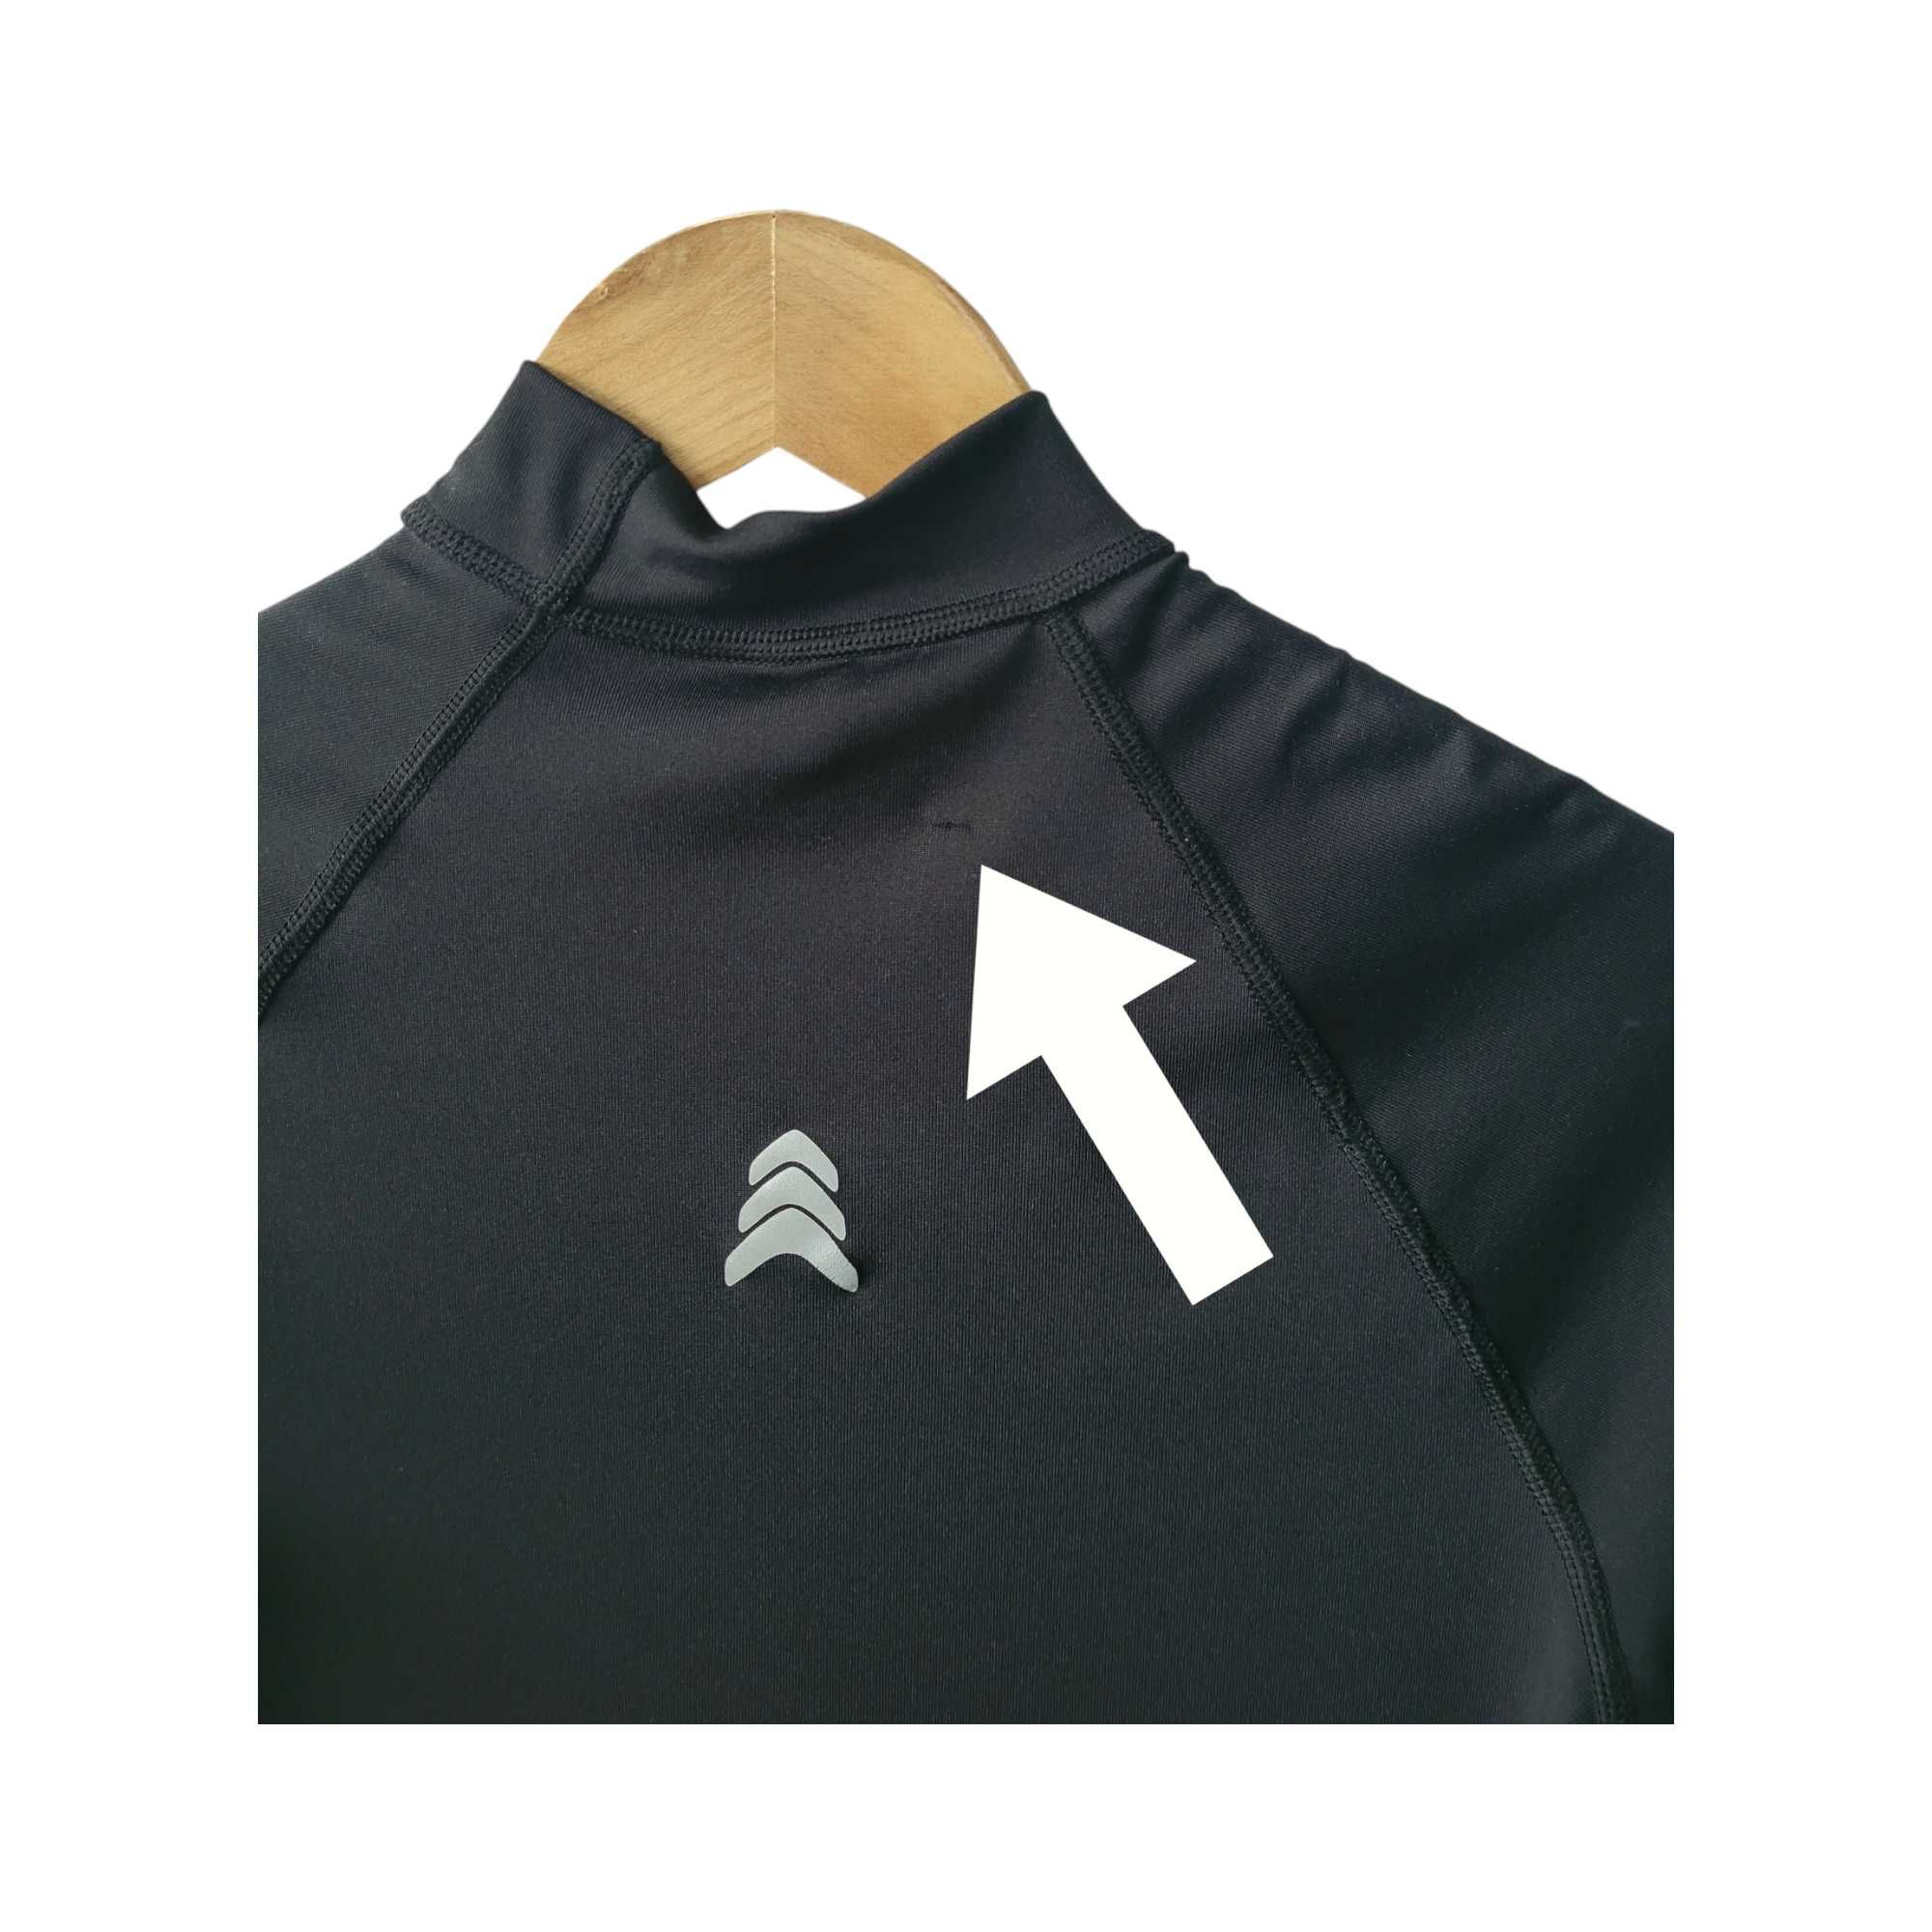 Czarna sportowa bluzka damska M termoaktywna z jonami srebra półgolf